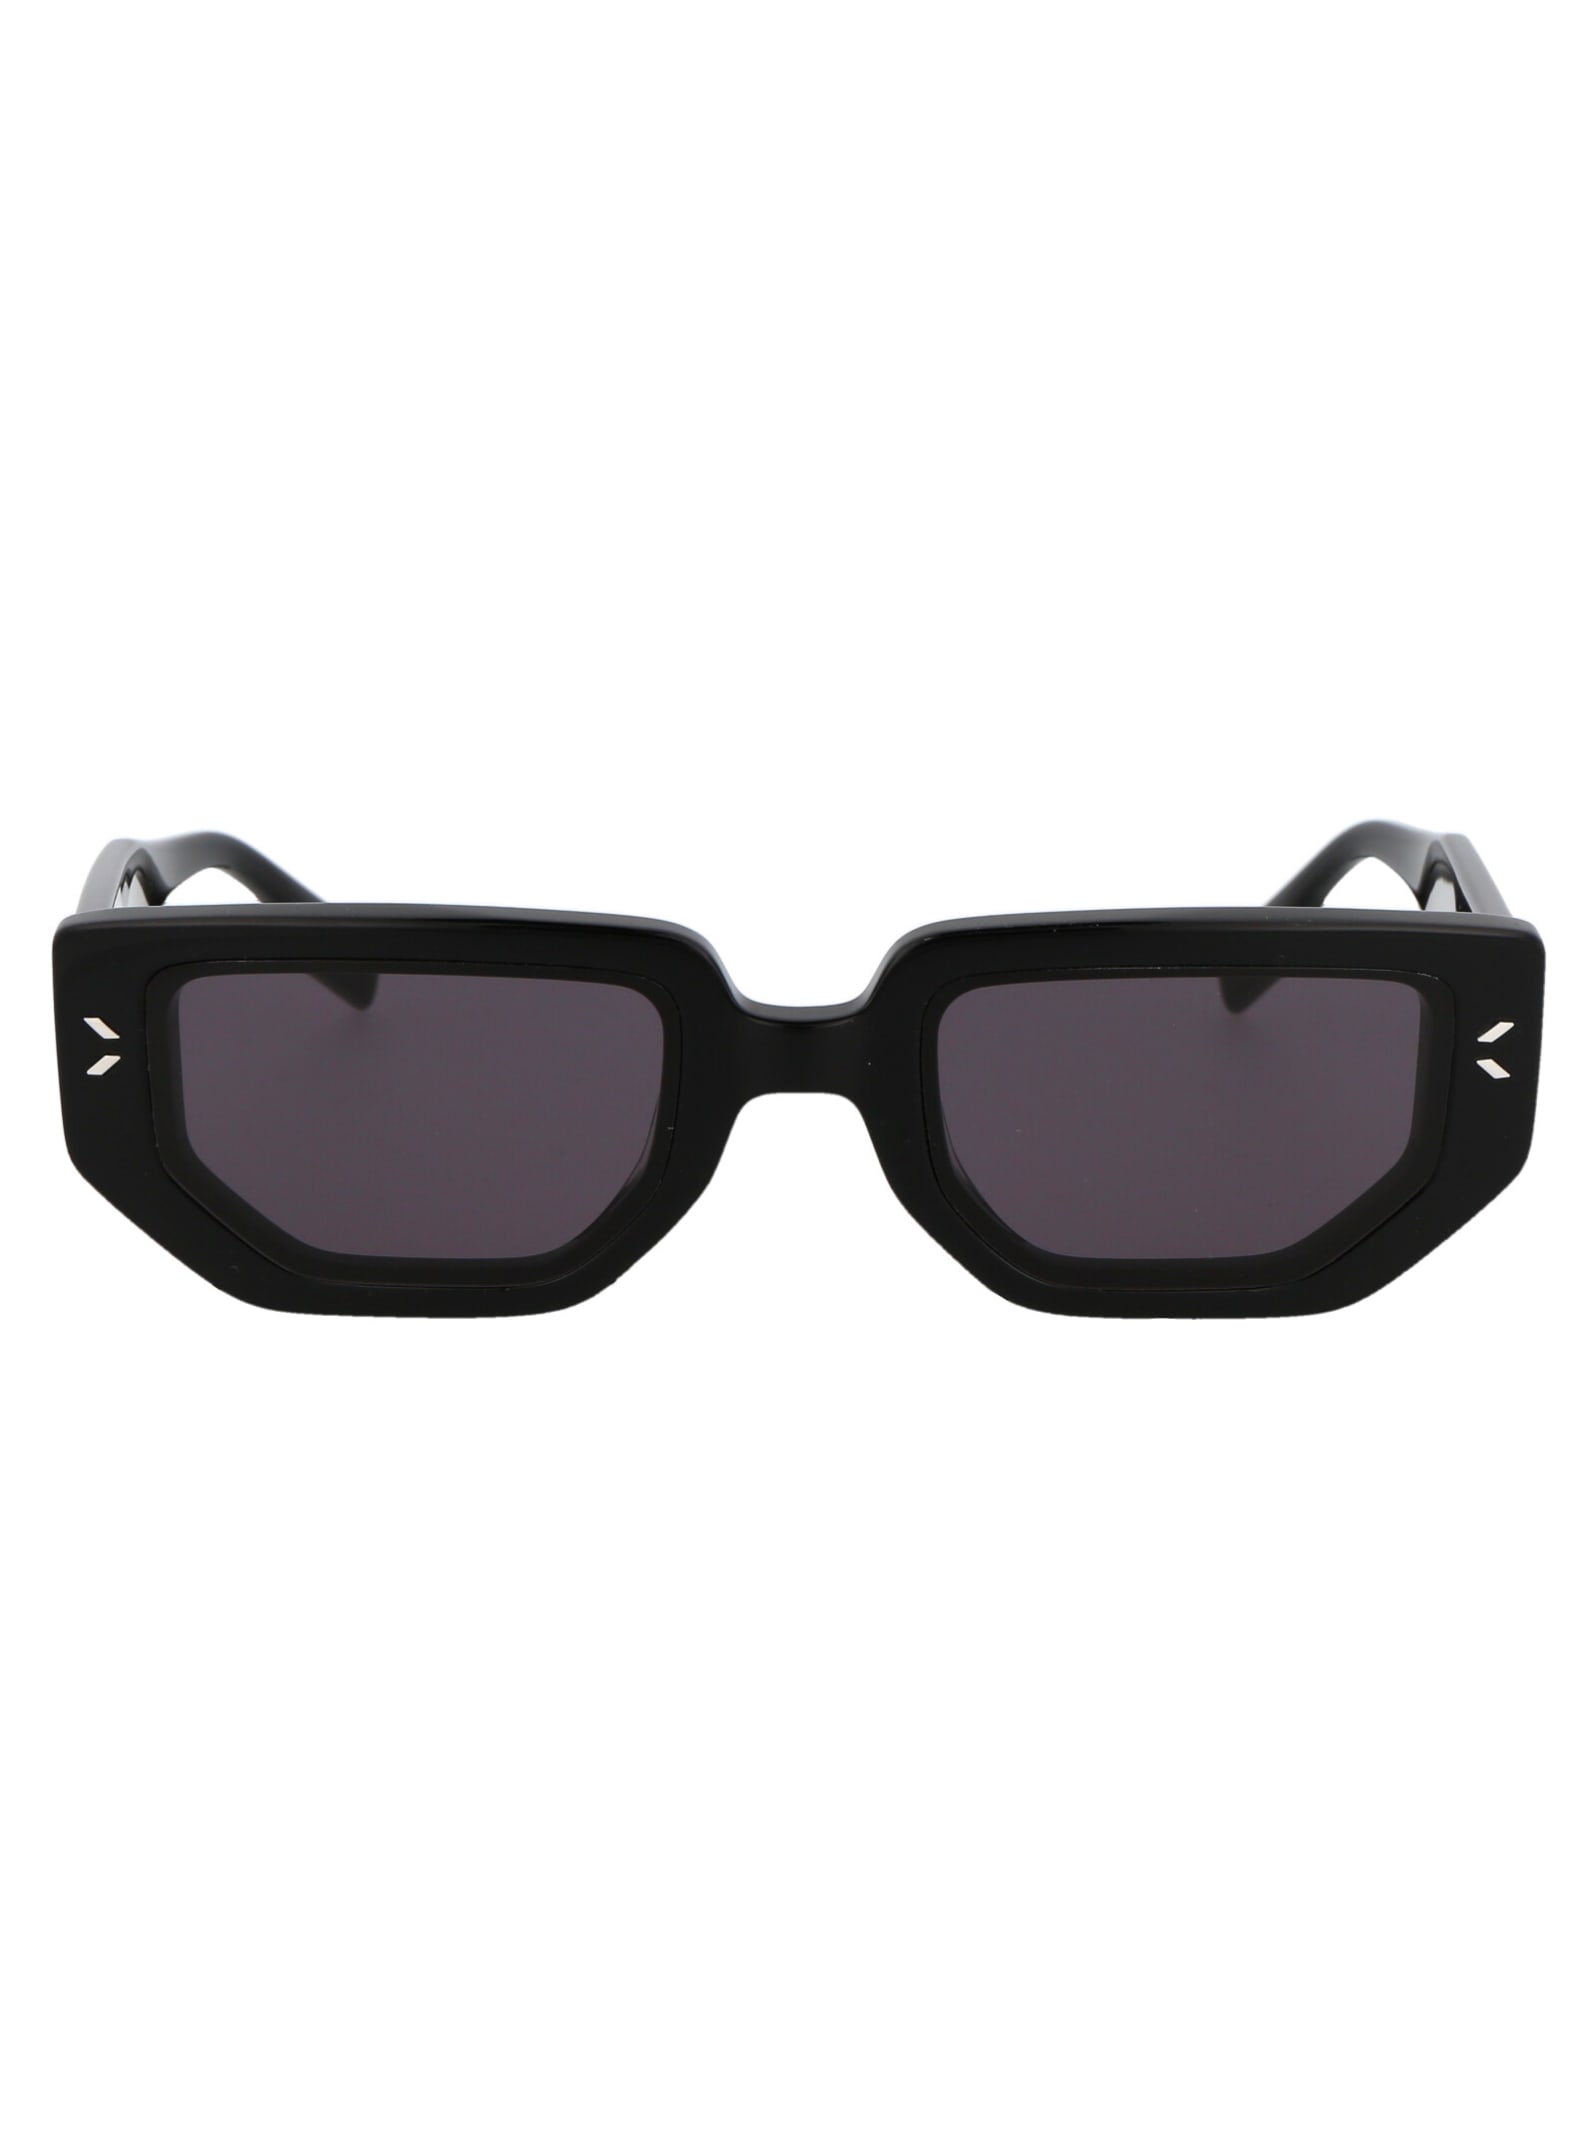 McQ Alexander McQueen Mq0362s Sunglasses